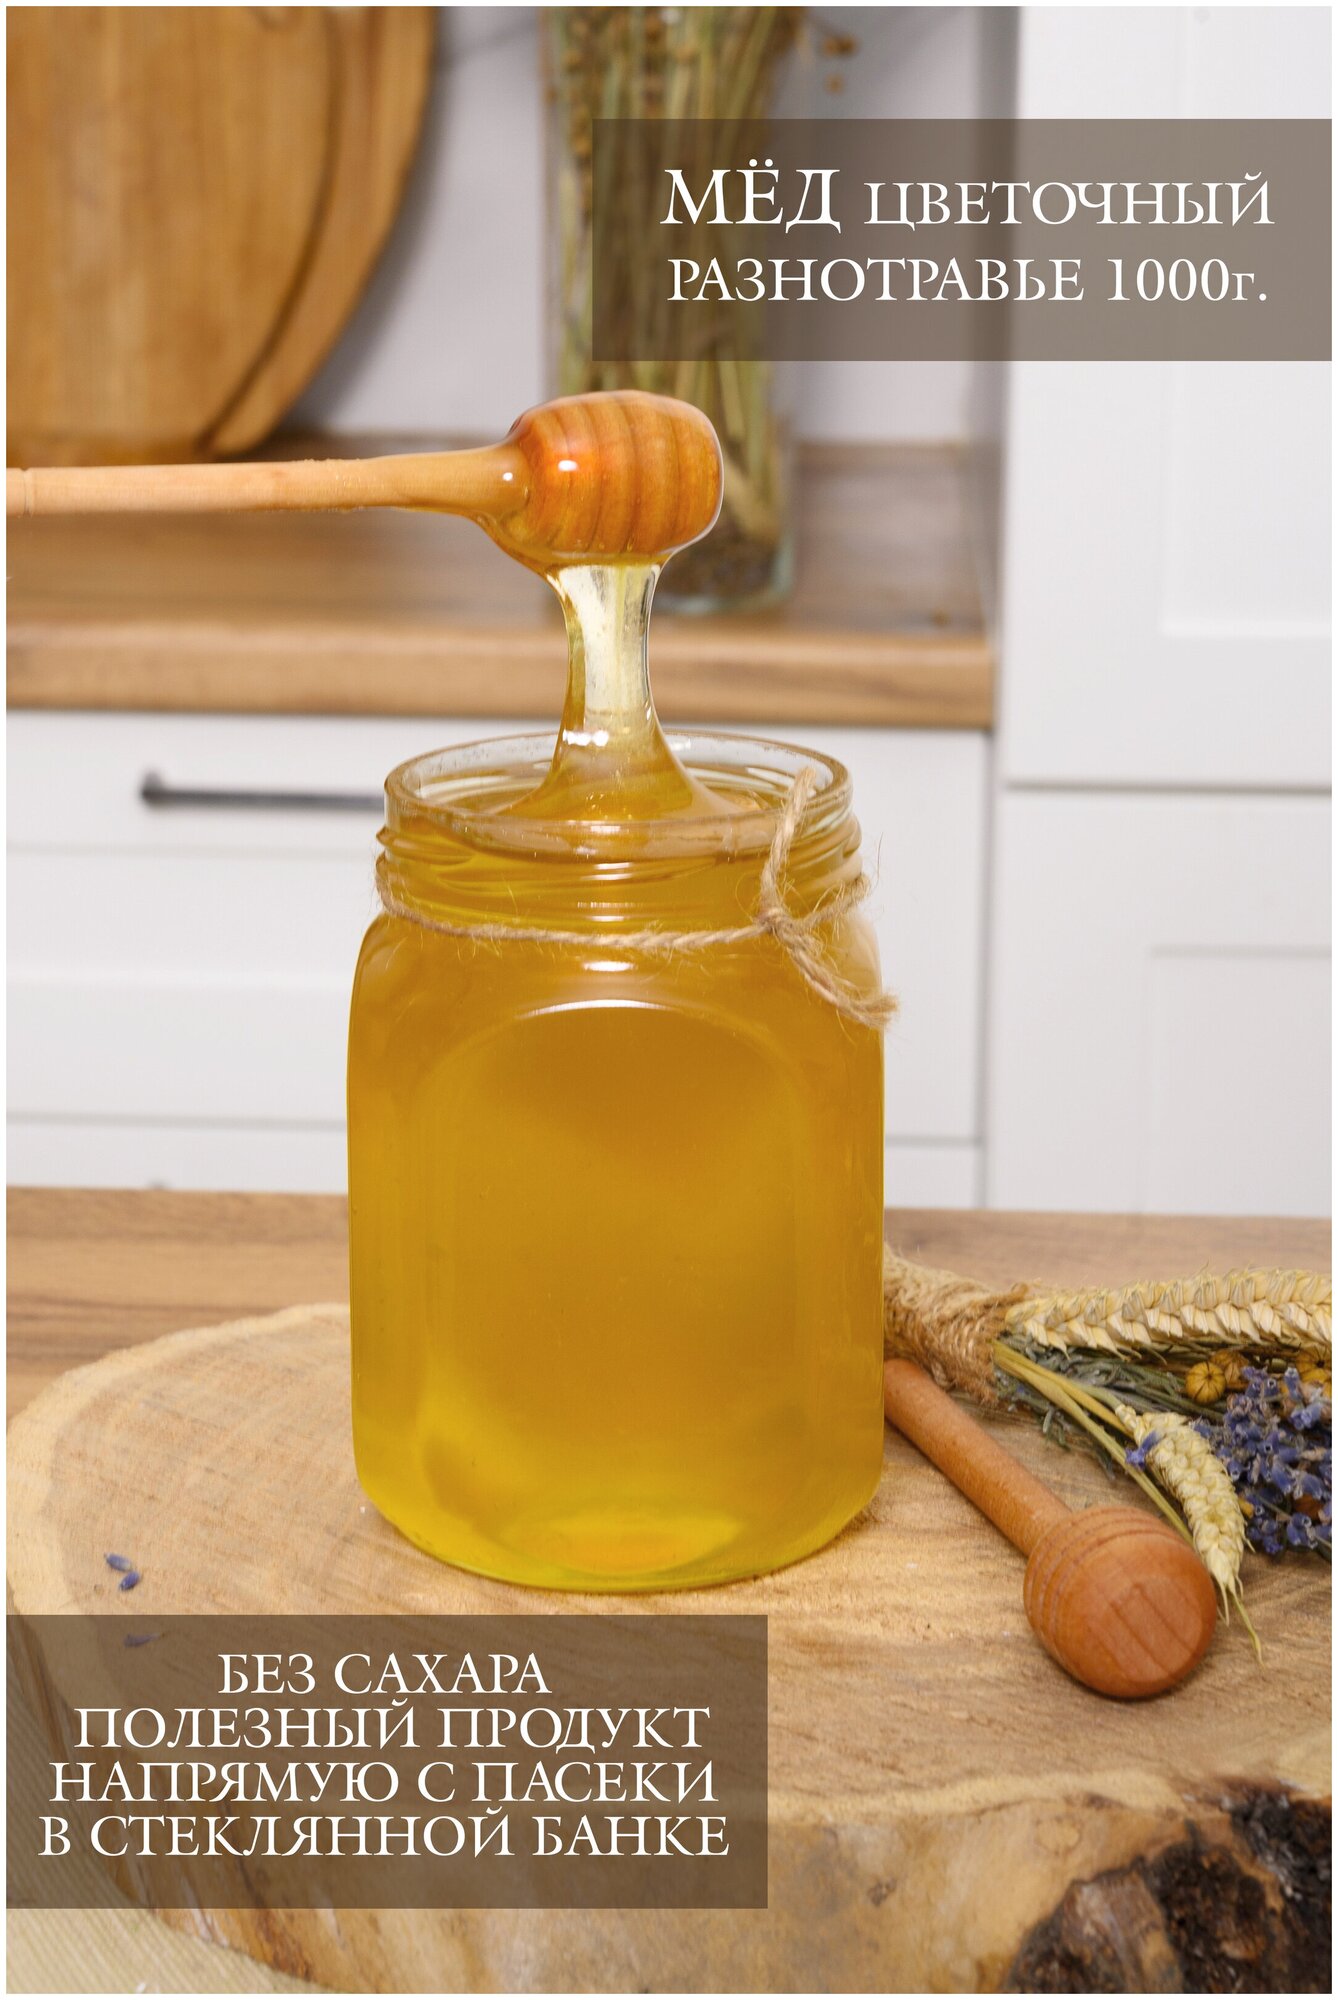 Мёд натуральный Разнотравье 1000г. в стеклянной банке без сахара, полезный продукт, зож - фотография № 1